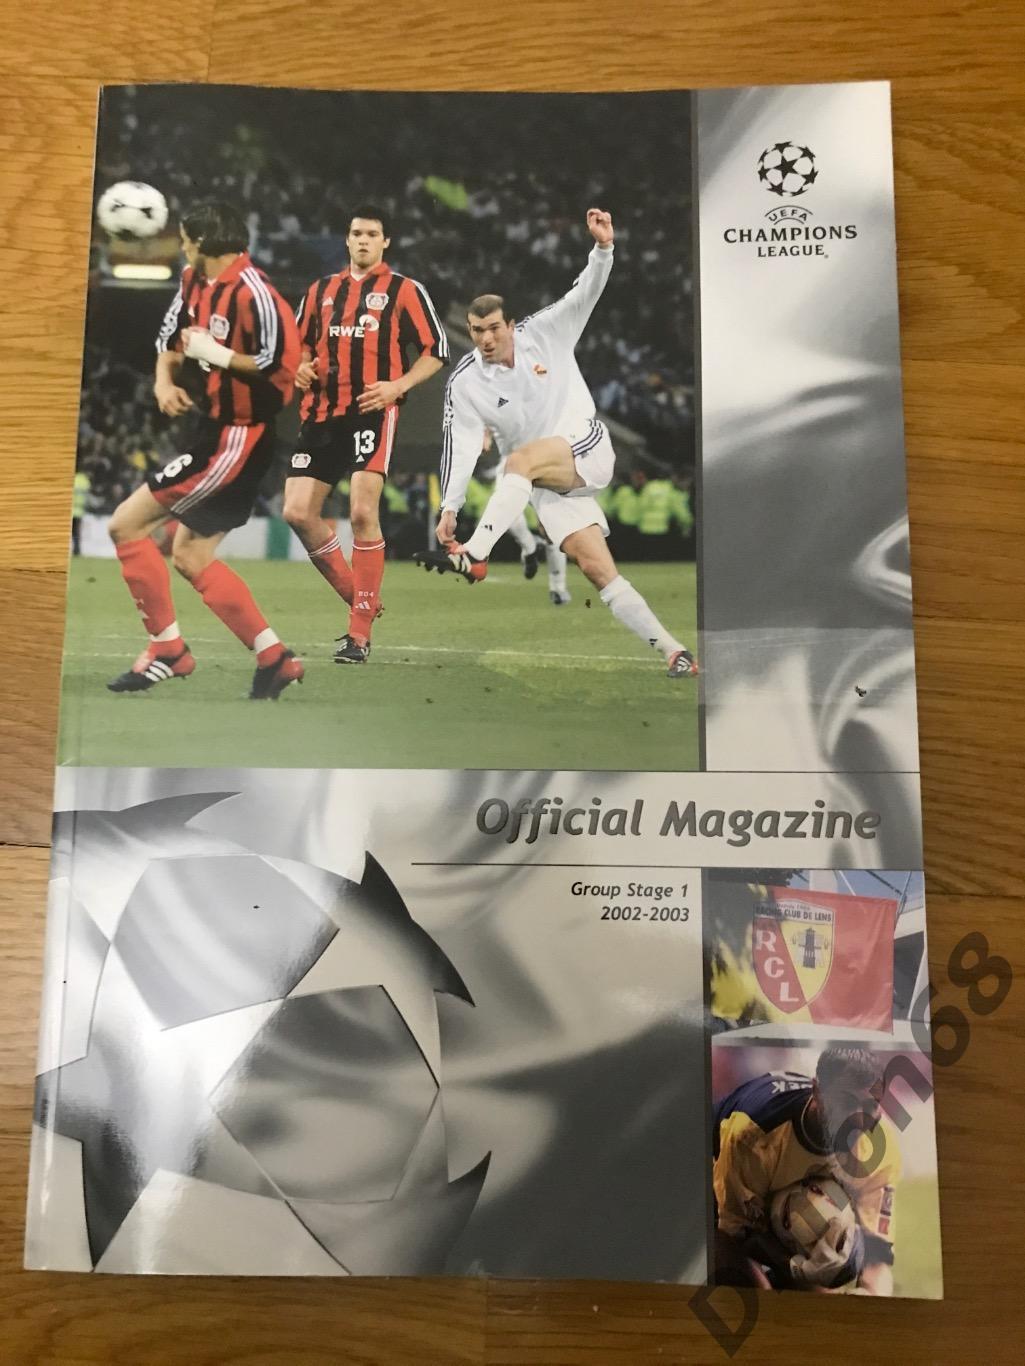 official magazine лига чемпионов 2002/03 целый в идеальном состоянии